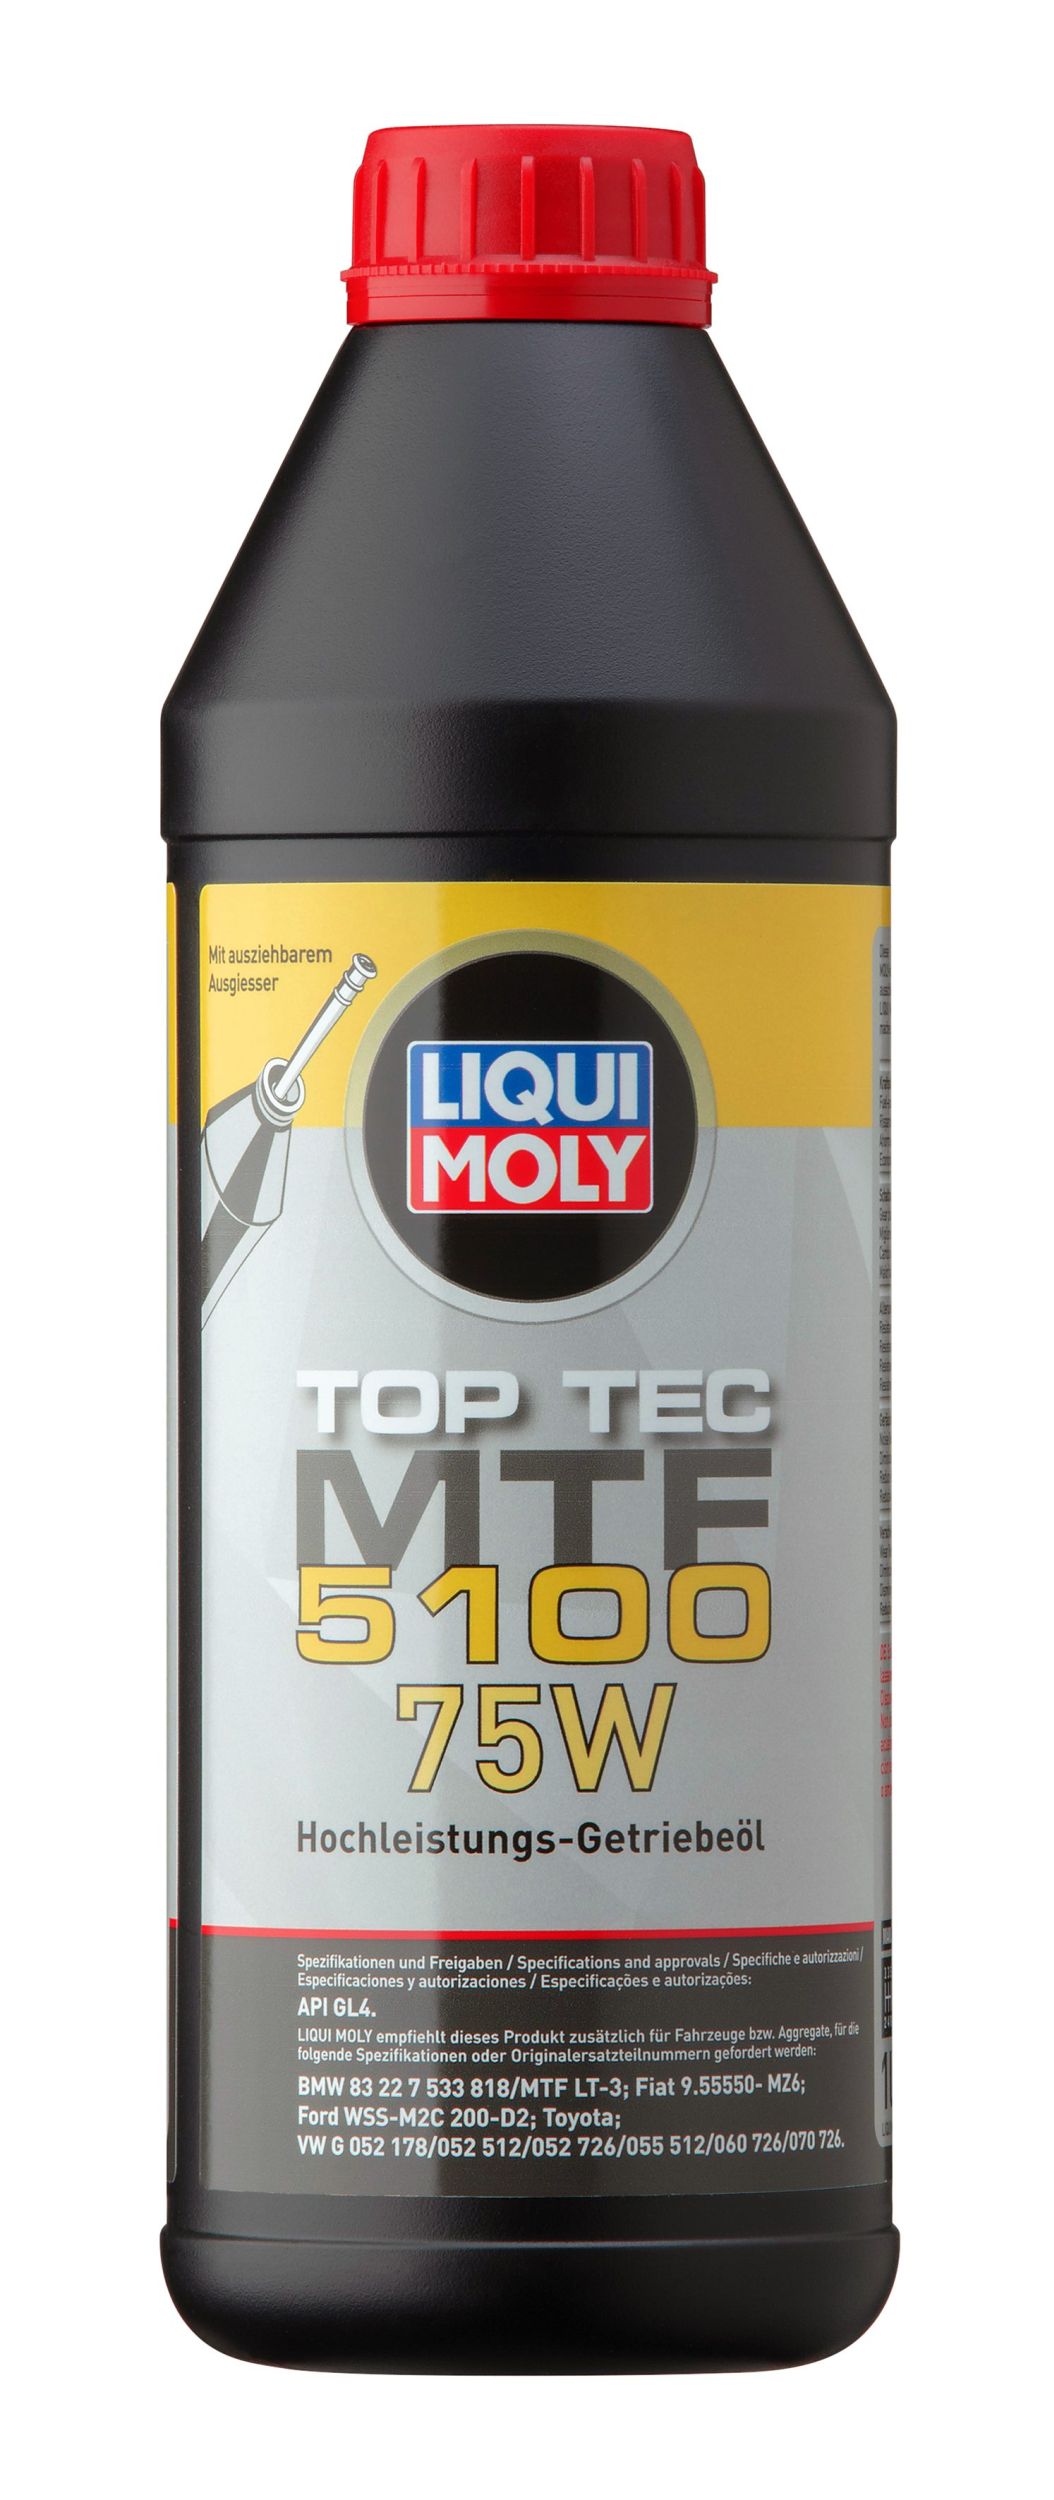 Picture of Liqui Moly Top Tec Mtf 5100 75W 1L